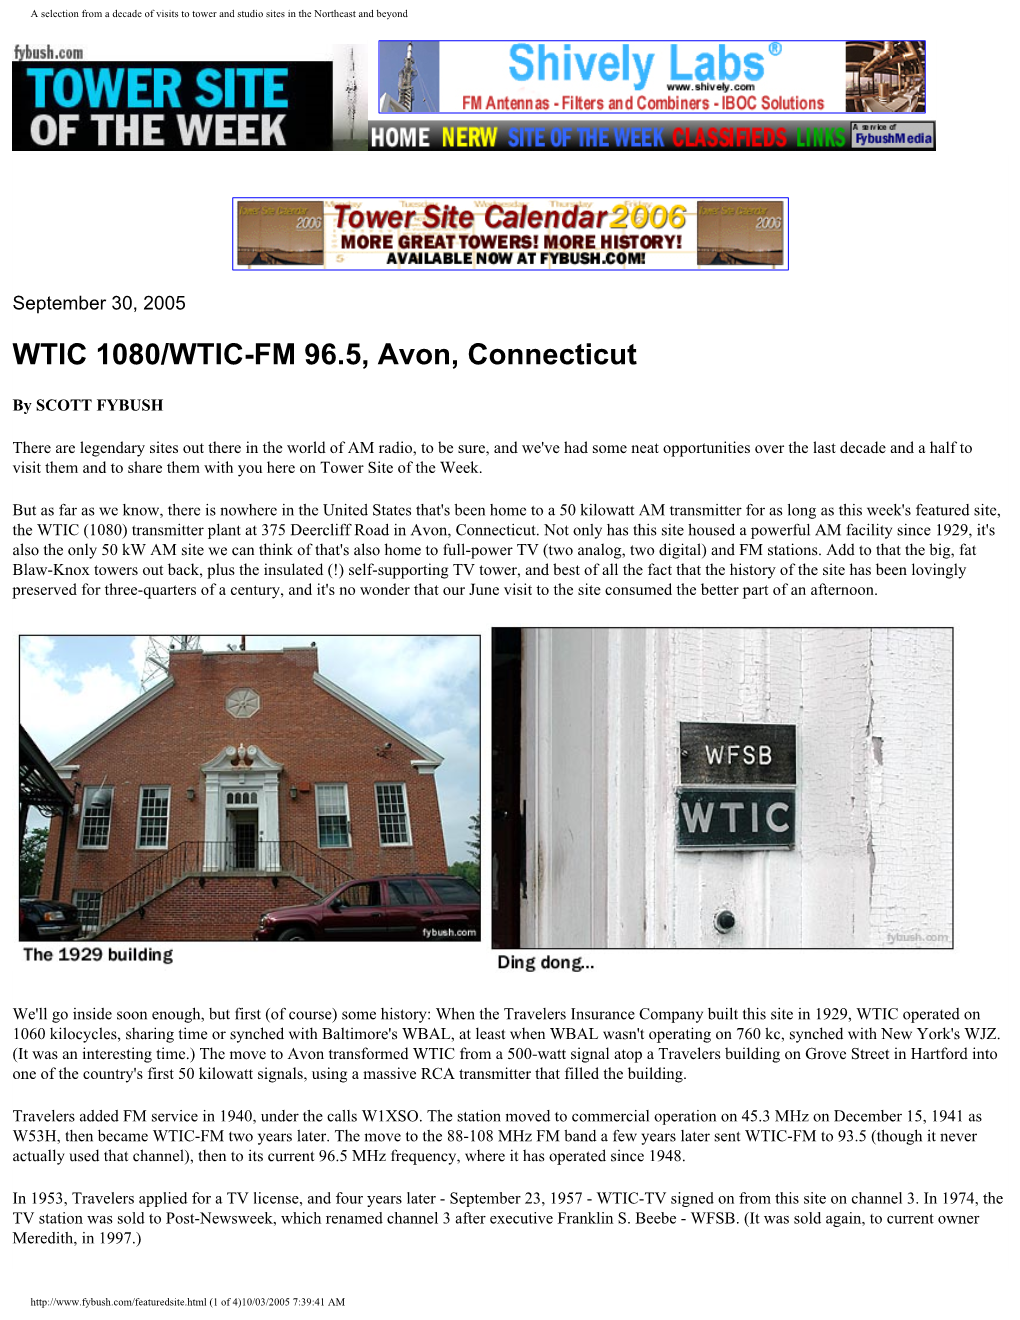 Wtic-Transmitter-Sit